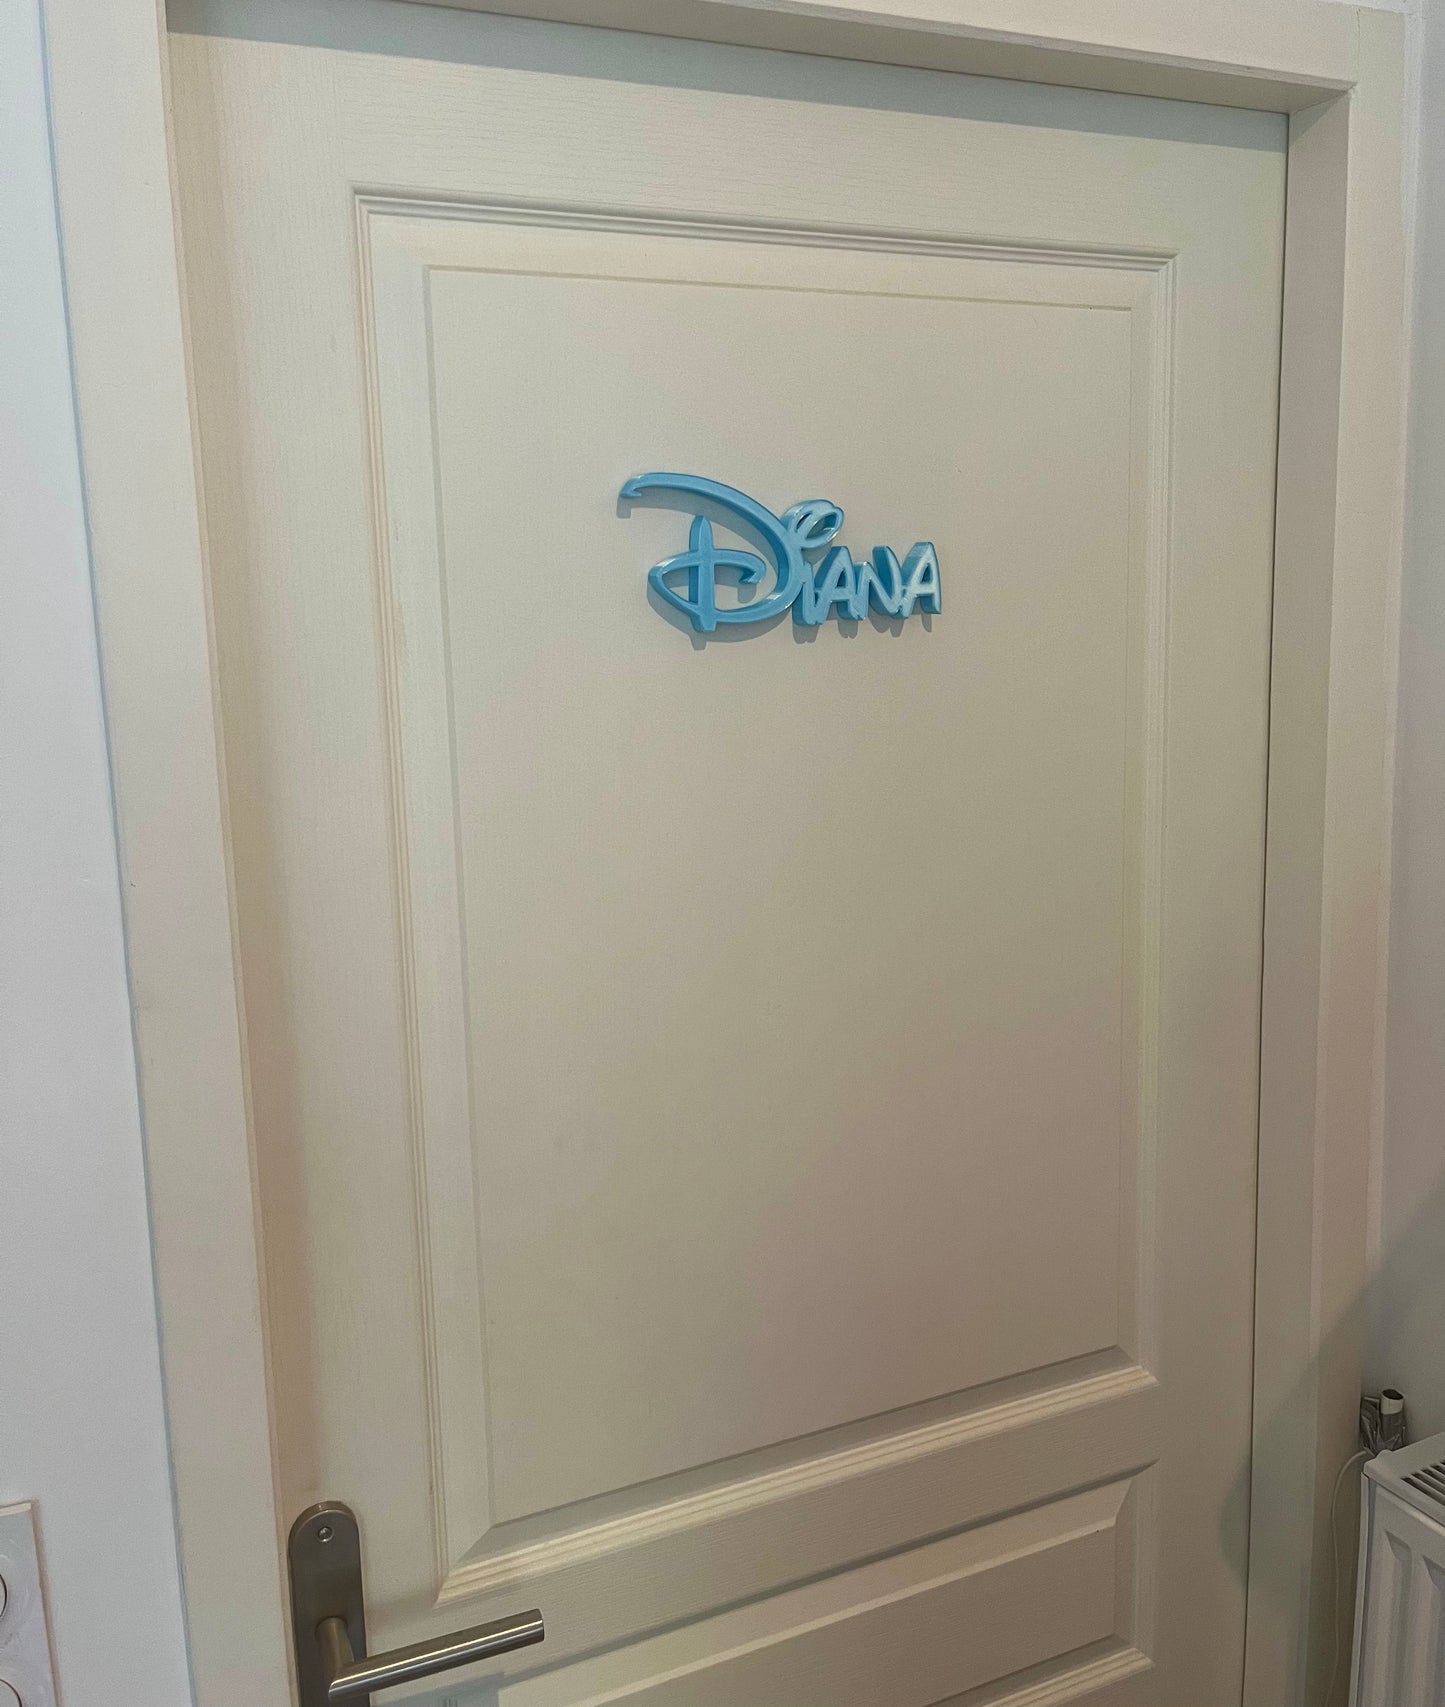 Décoration Nom style Disney personnalisée / Plaque signalétique imprimée en 3D ! Cadeau Disney